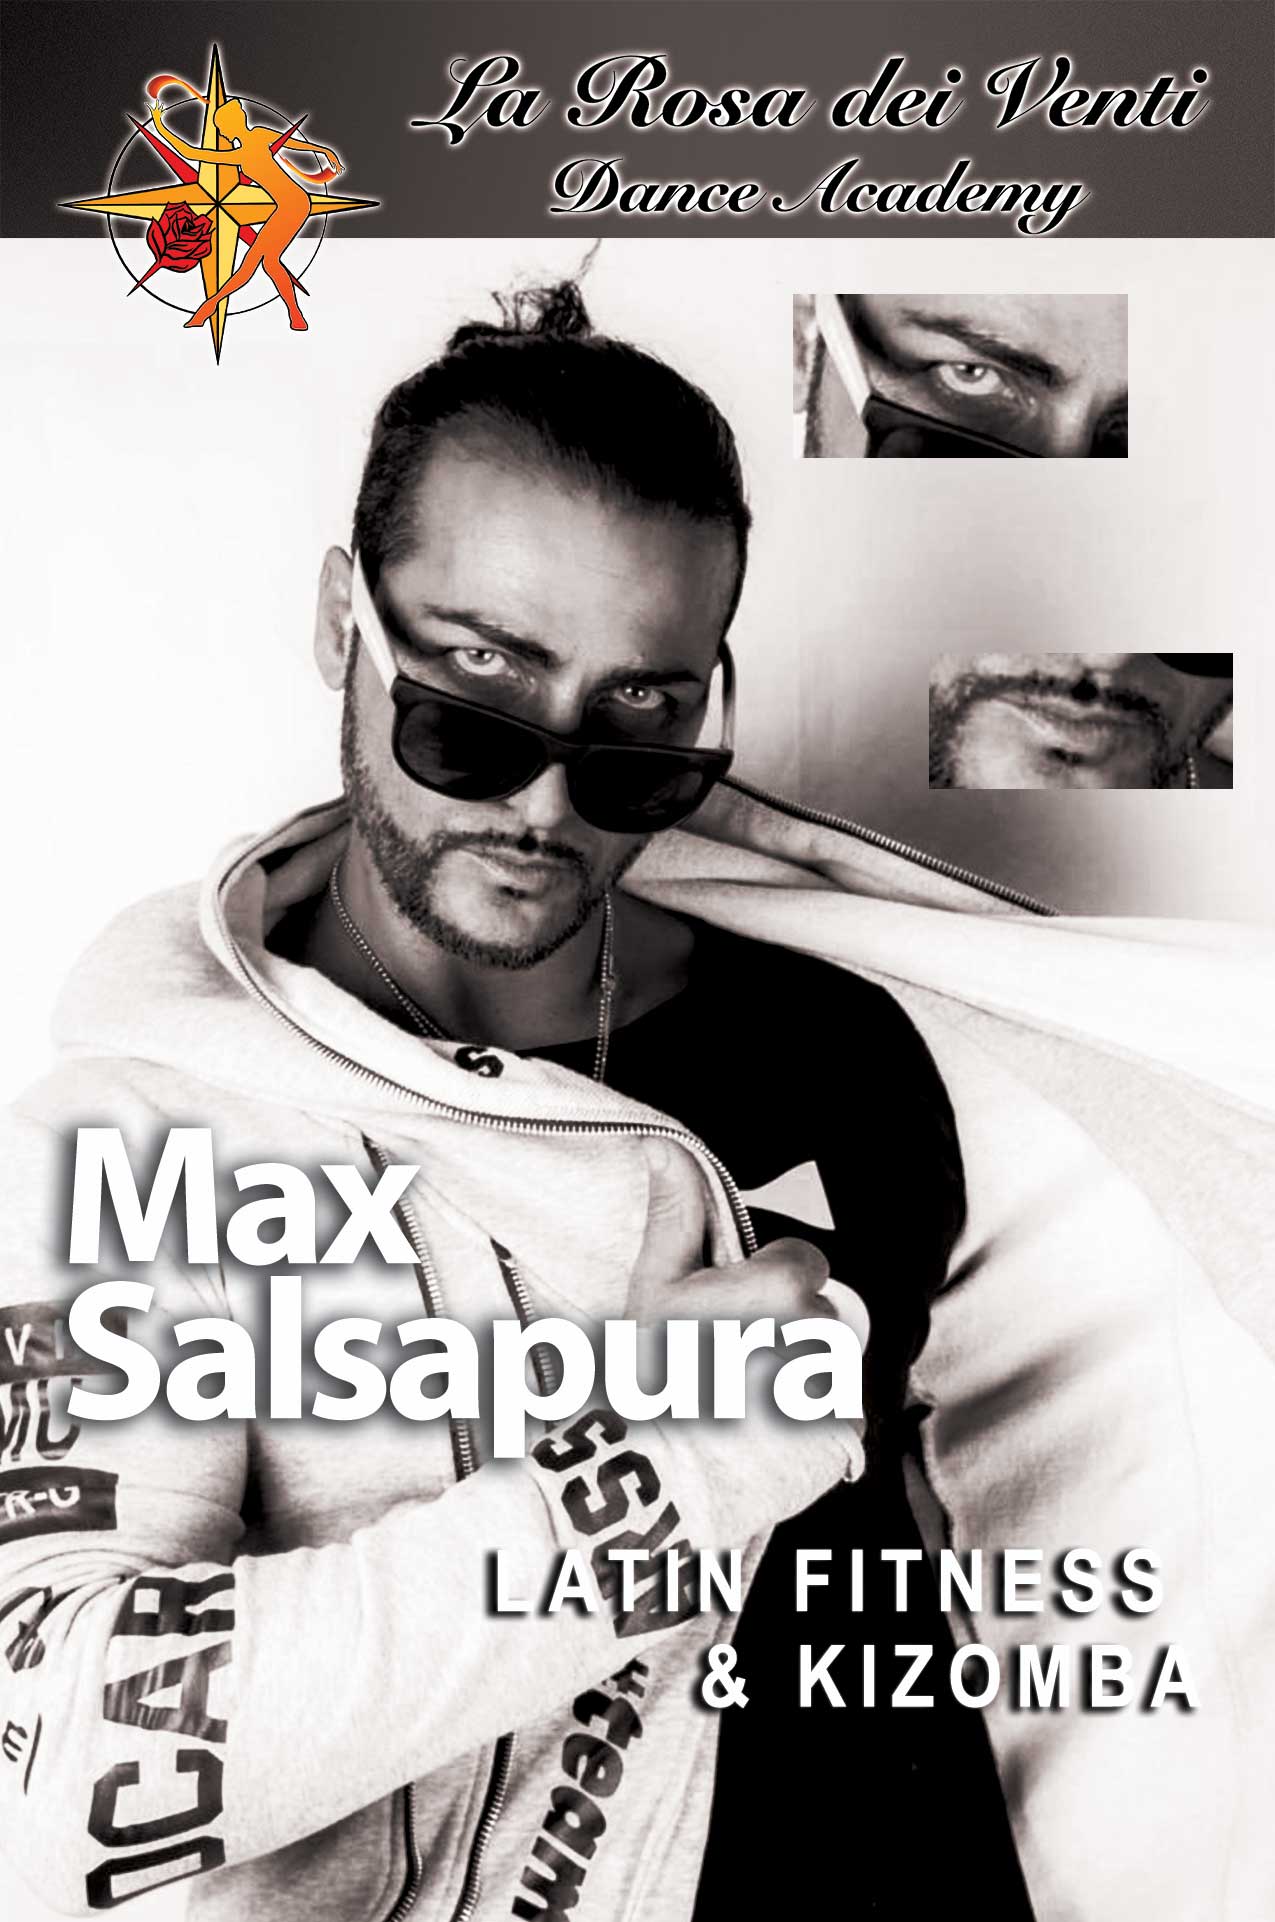 Max Salsapura Latin Fitness & Kizomba La Rosa dei Venti Dance Accademy